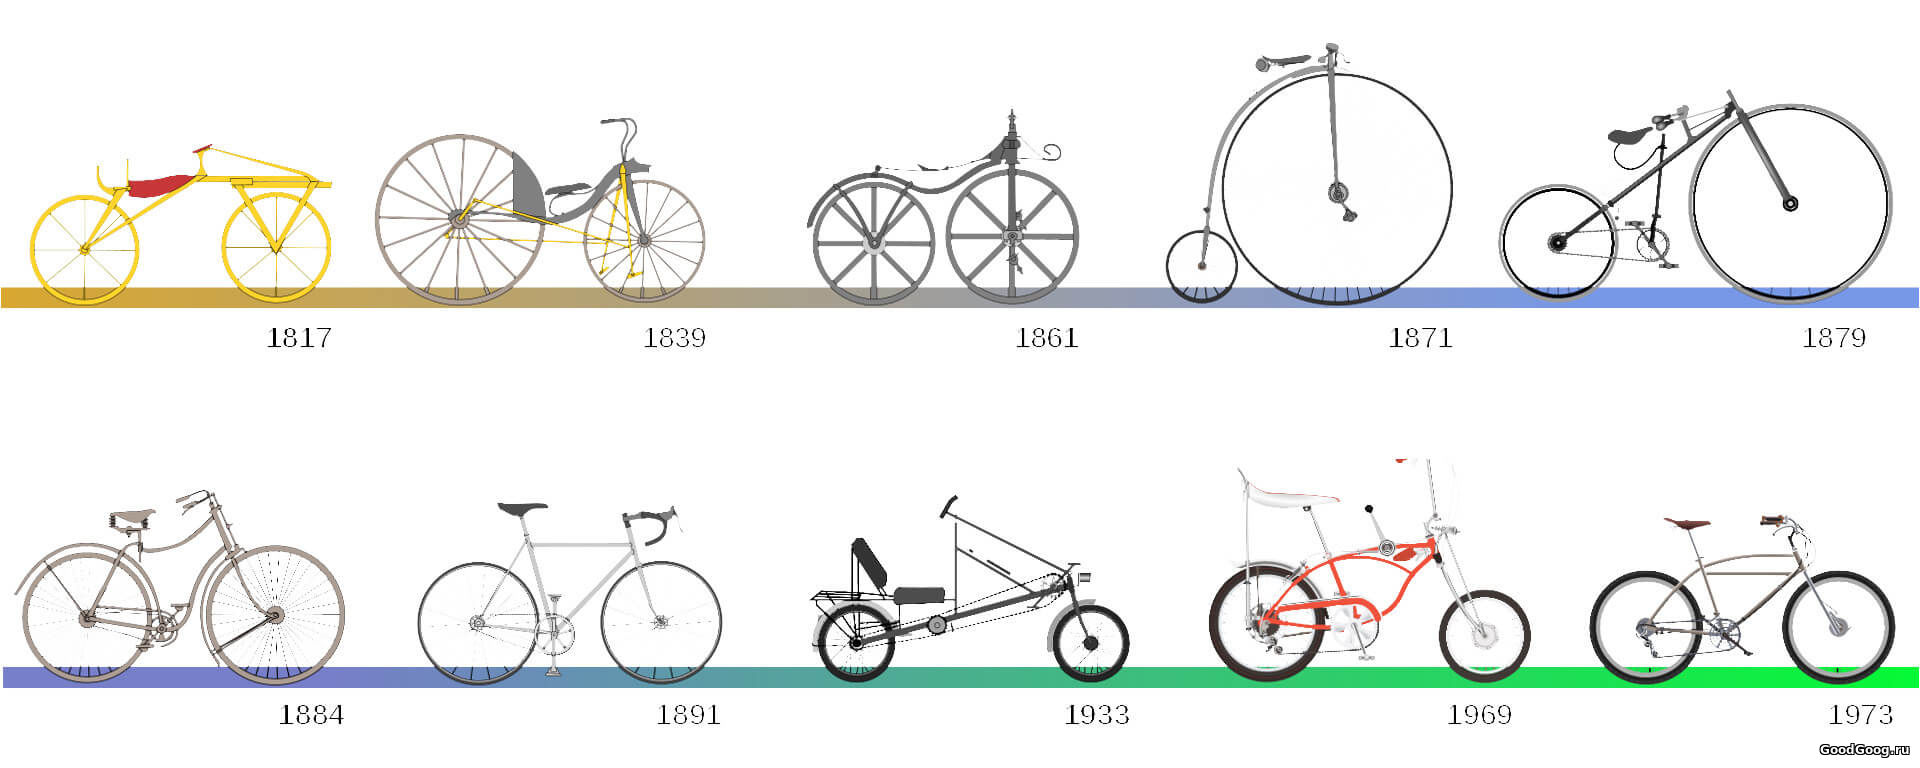 История появления велосипеда по годам